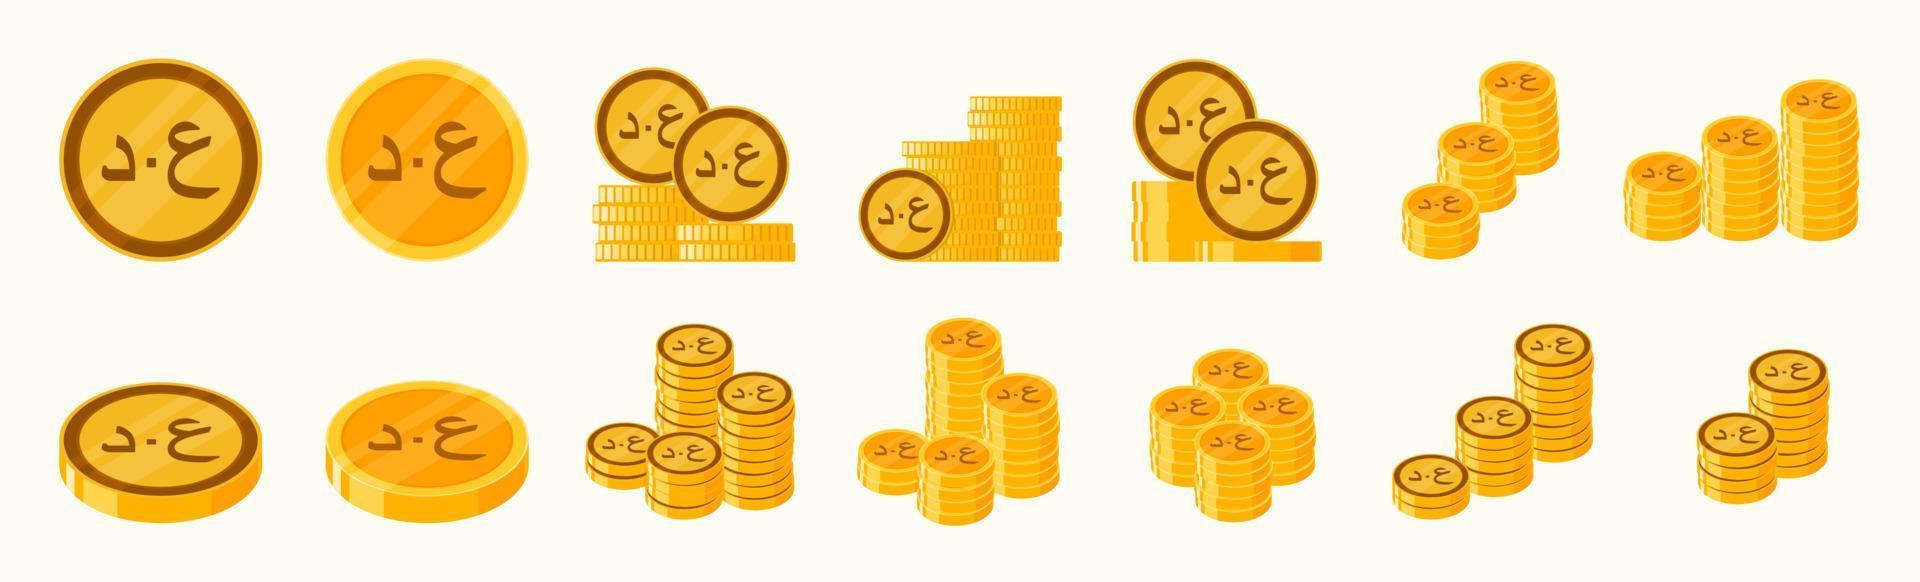 Iraqi Dinar Coin Icon Set vector